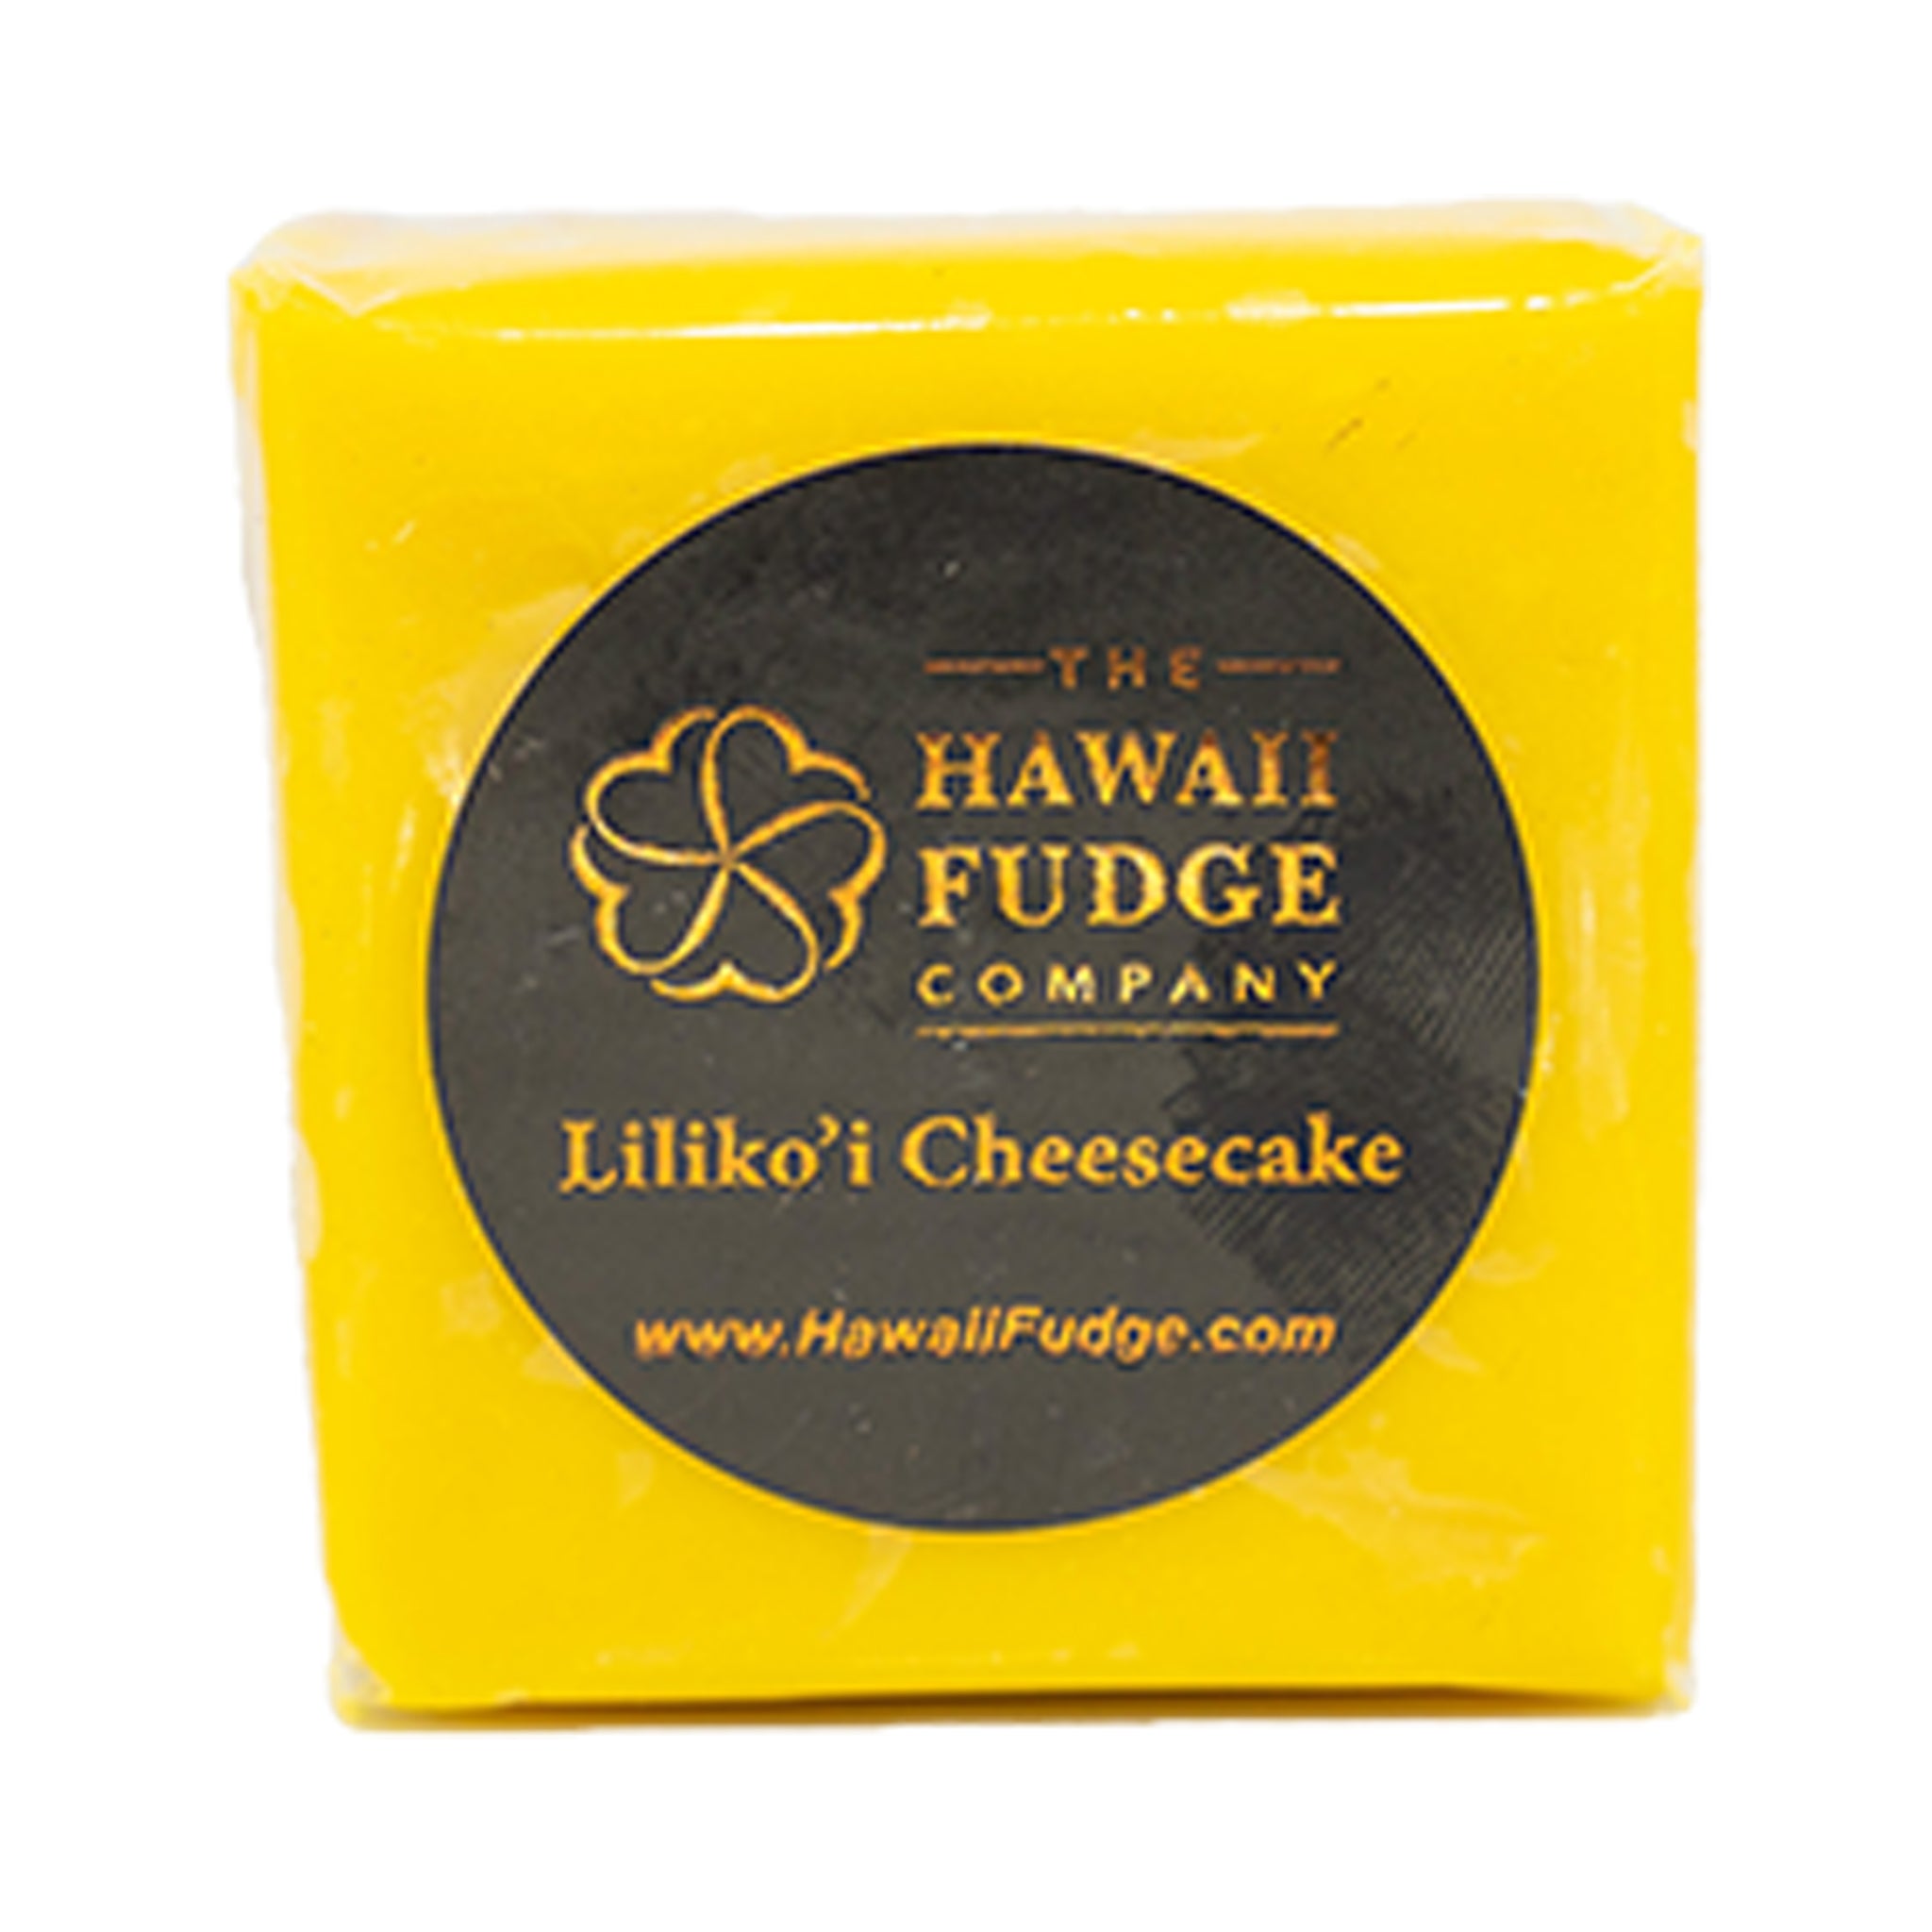 Lilikoi Cheesecake Fudge